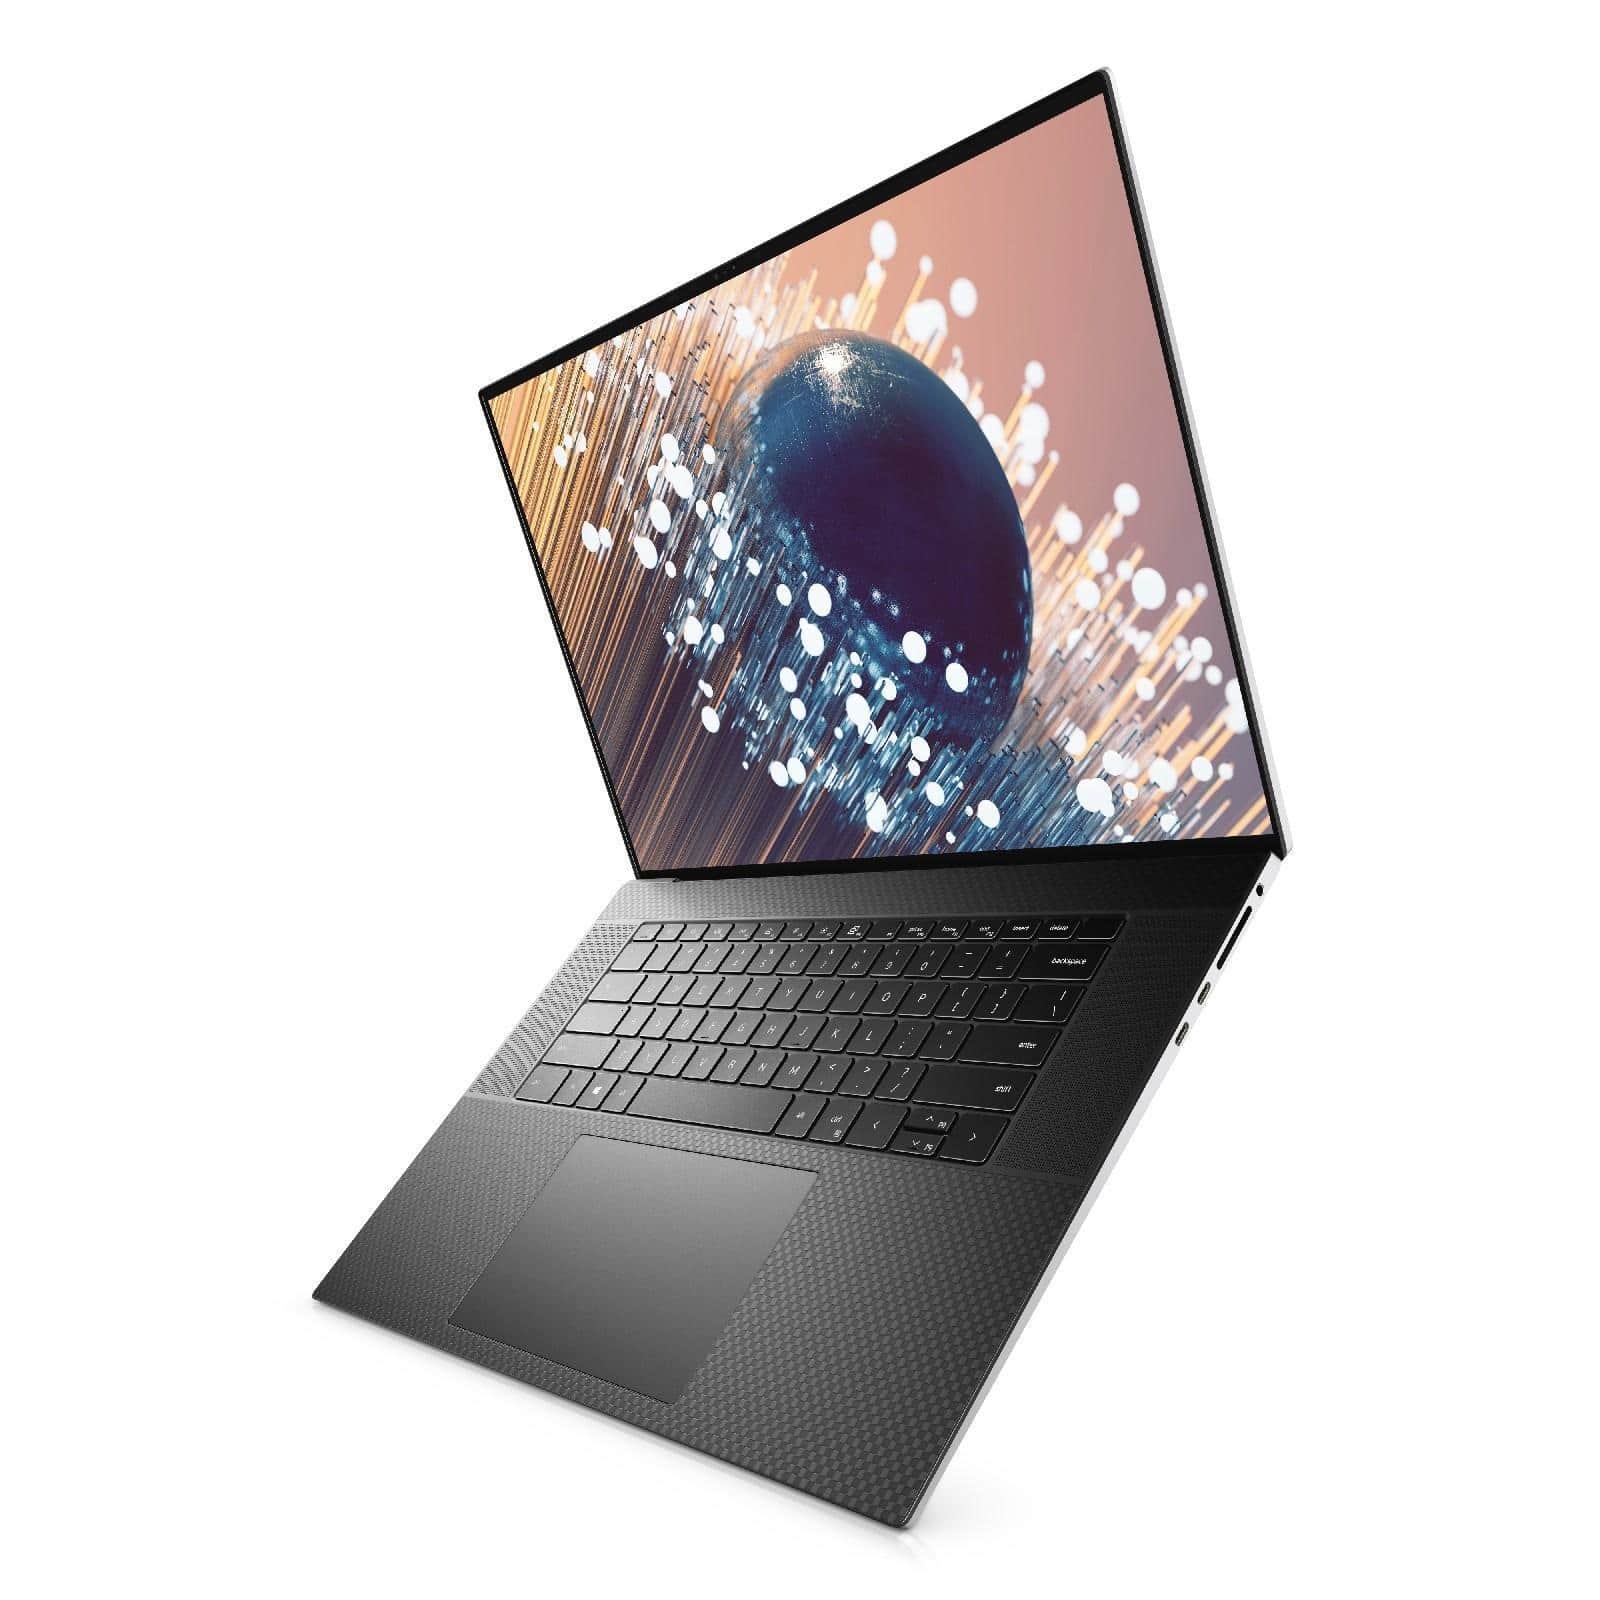 Giá bán Laptop Dell XPS 17 9700 i7 giá rẻ - bảo hành 12 tháng Dell XPS 17  9700